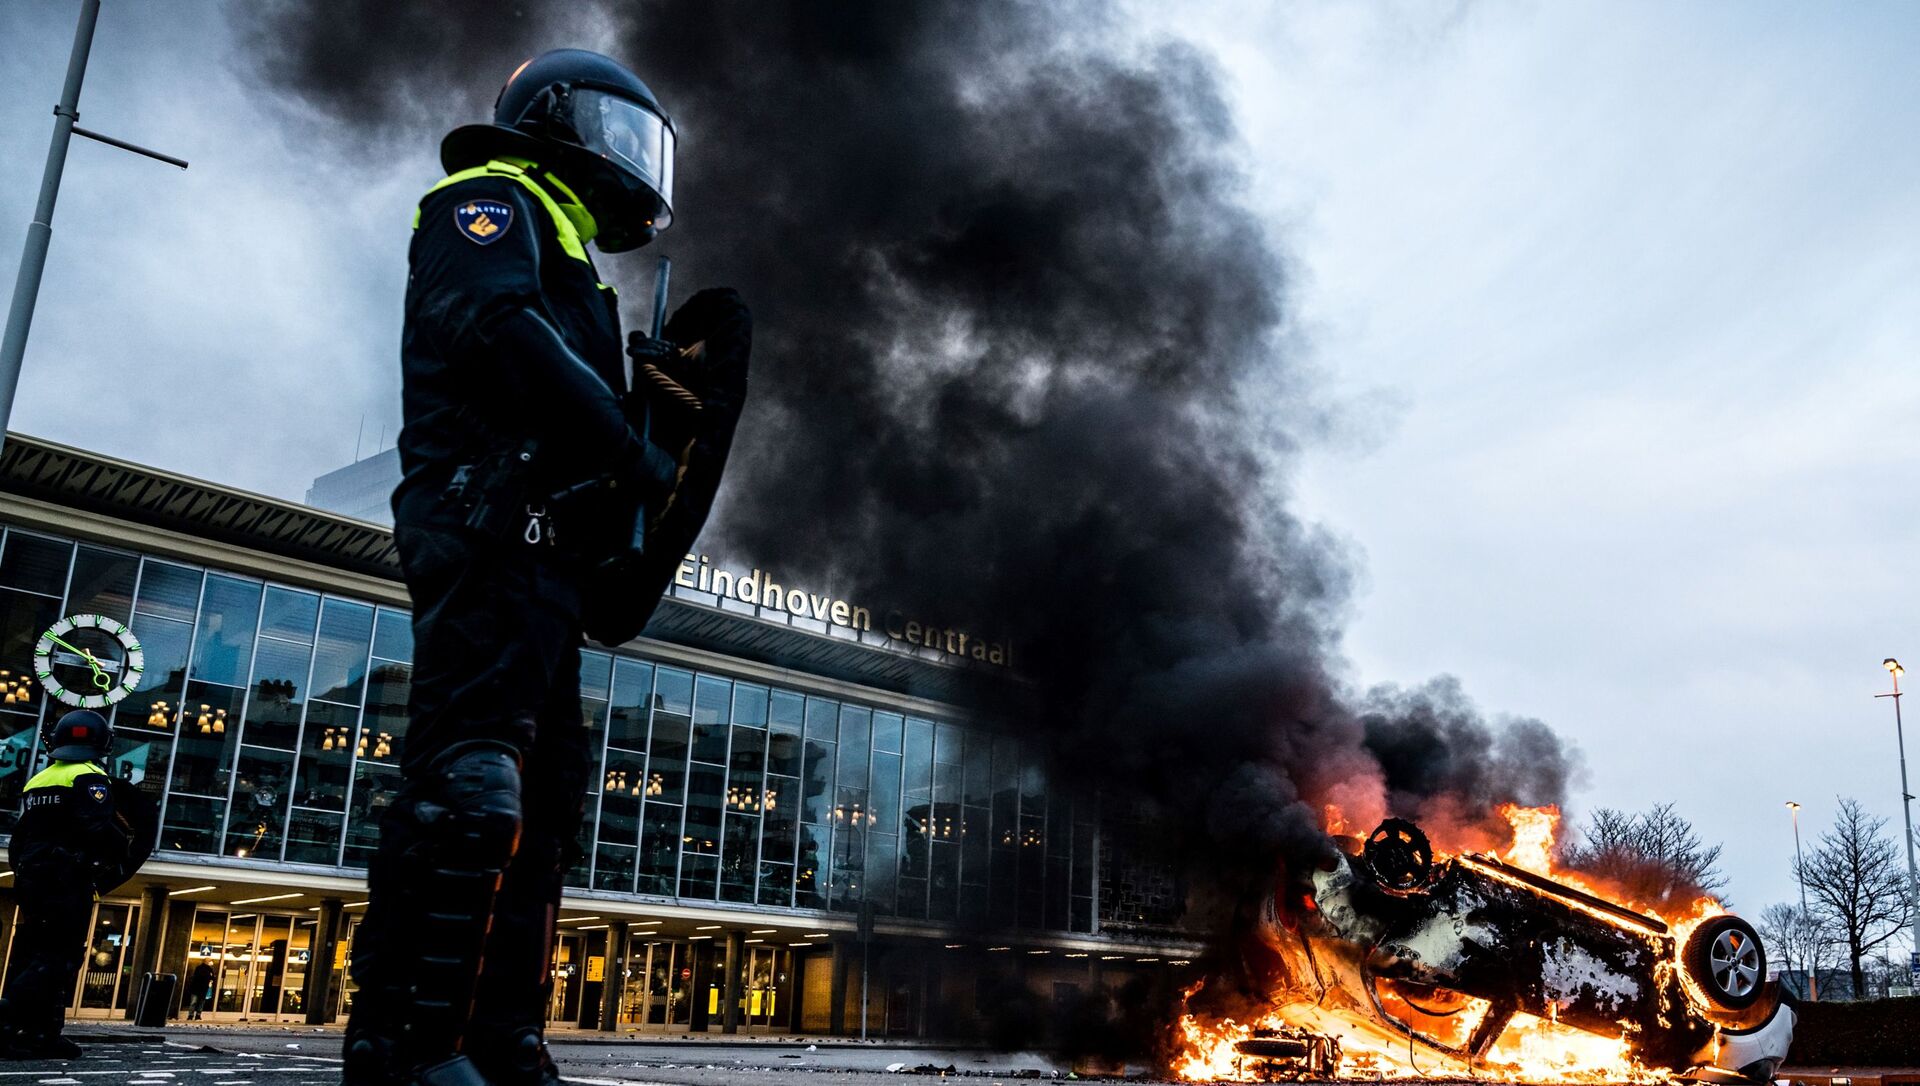 اشتعال النيران في سيارة أمام محطة القطار، بعد احتجاجات من قبل عدة مئات من الأشخاص ضد سياسة كورونا، في أيندهوفن، هولندا 24 يناير 2021  - سبوتنيك عربي, 1920, 20.11.2021